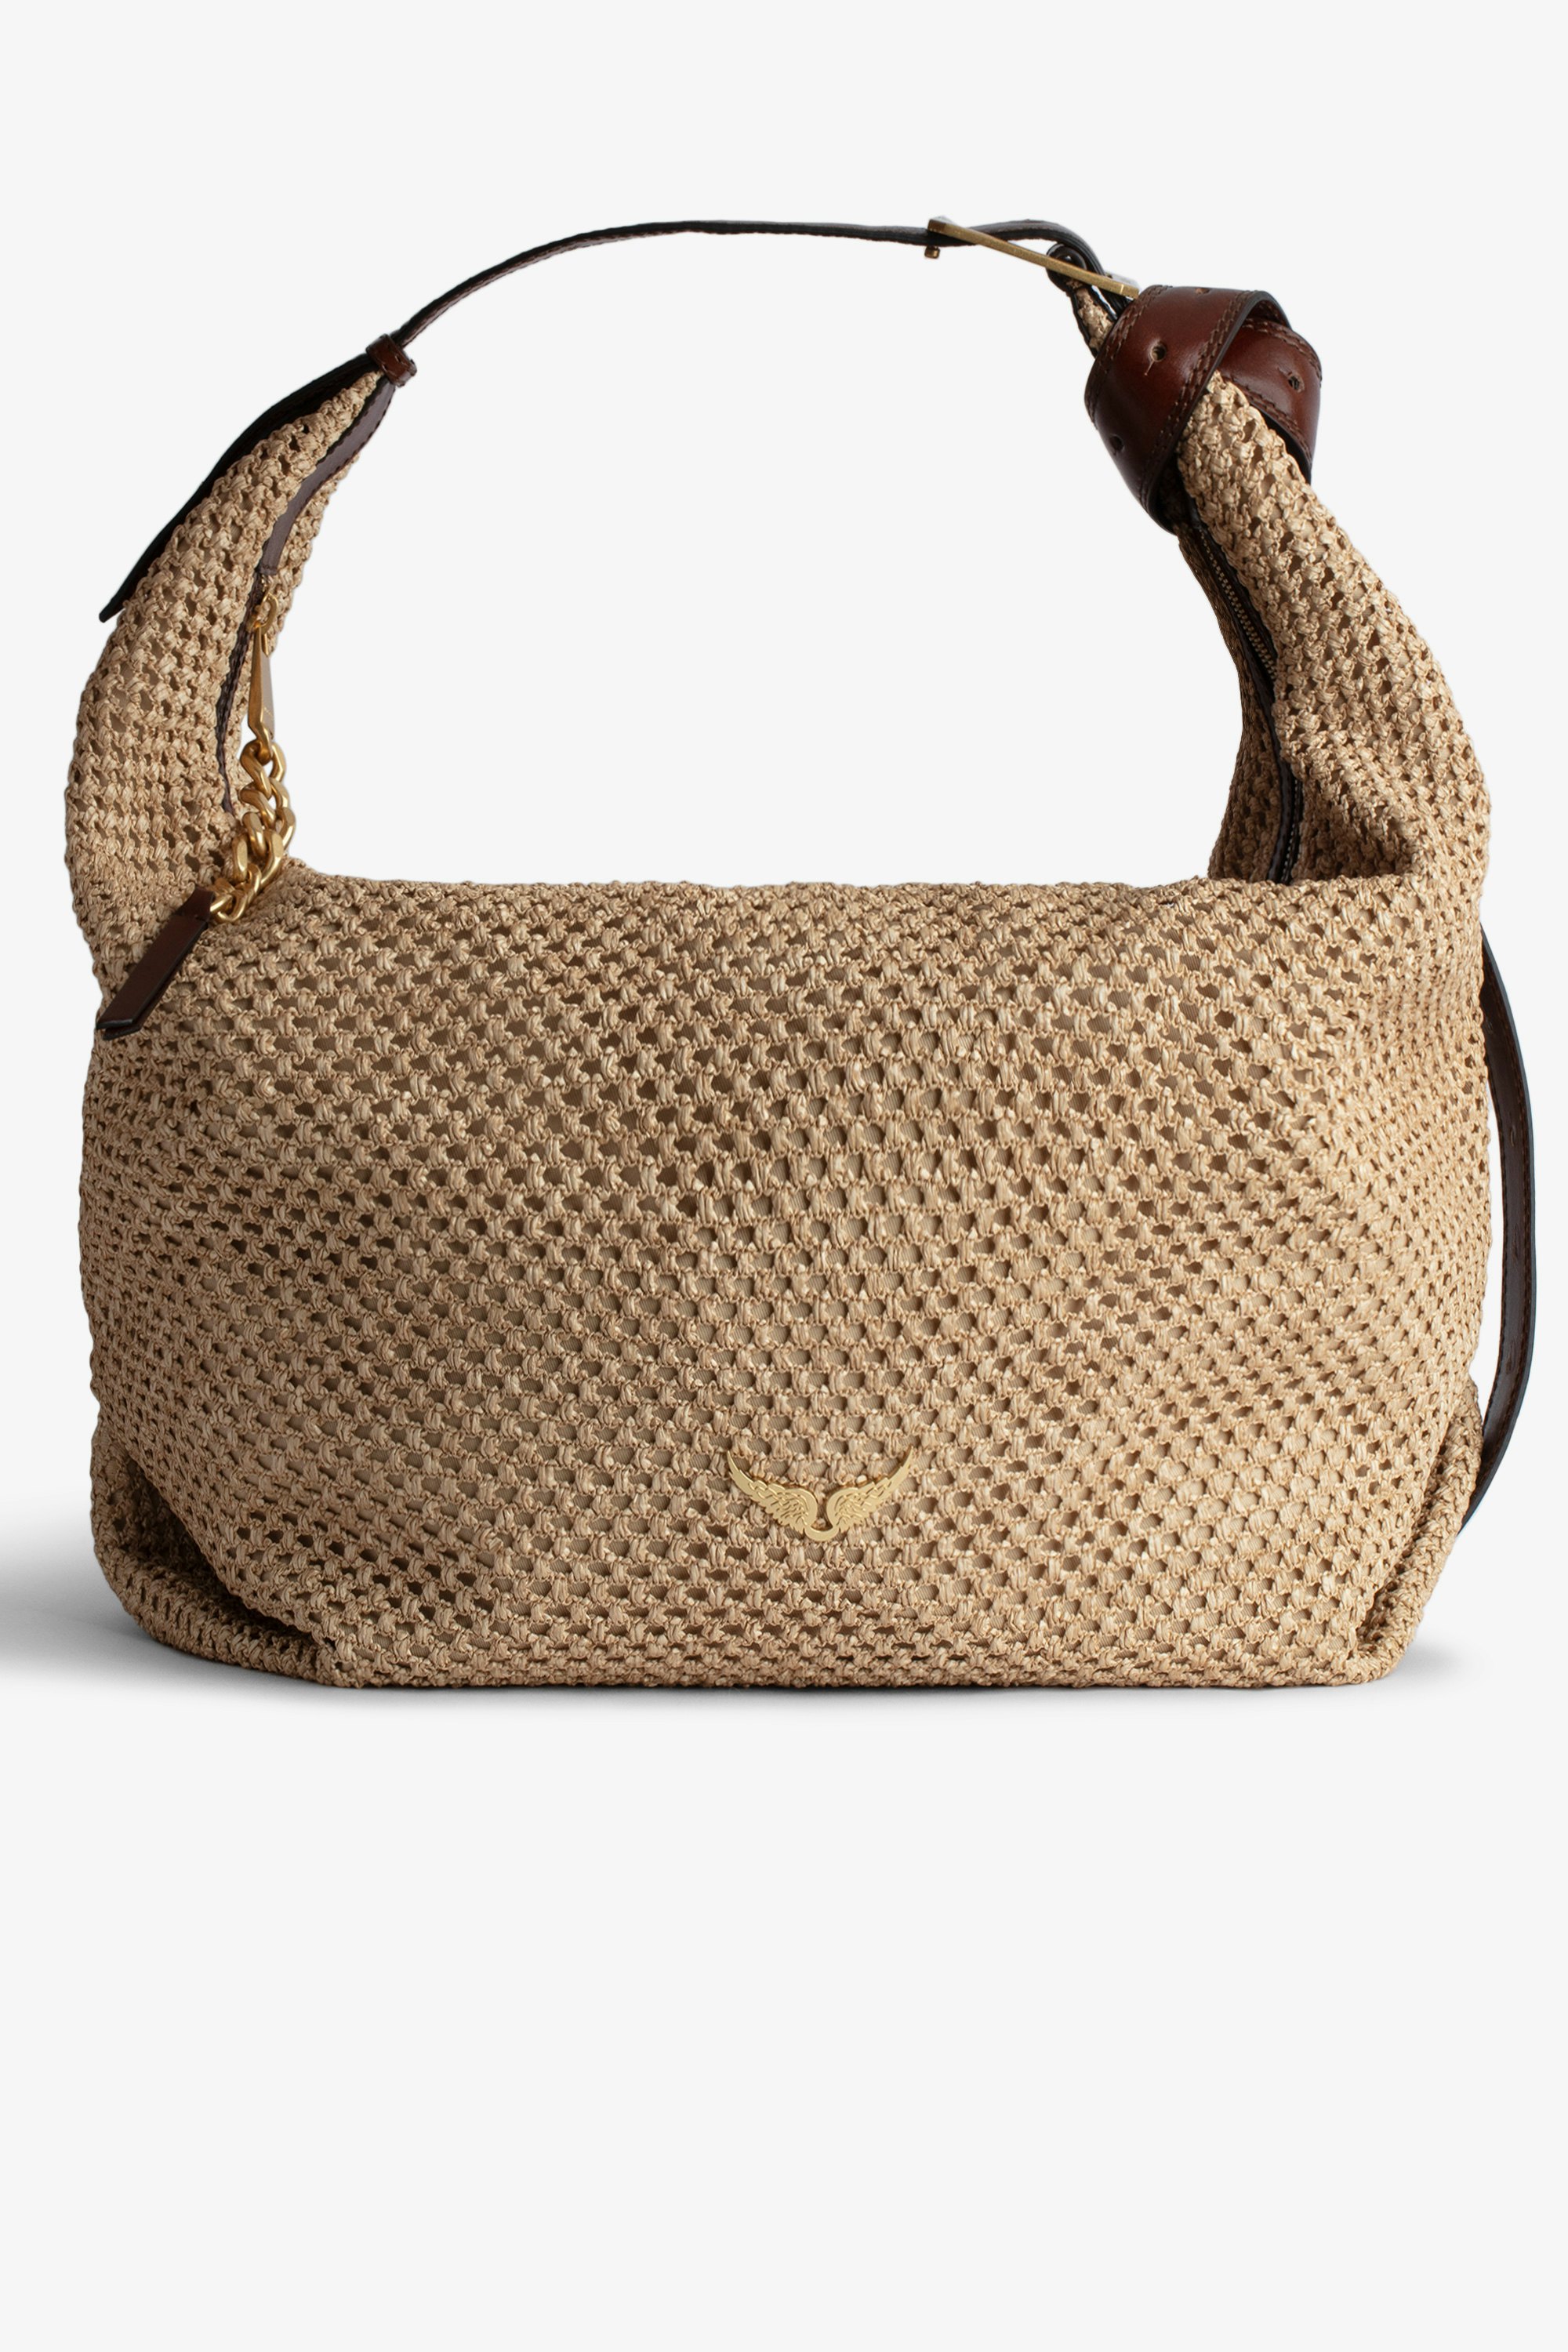 Le Cecilia XL - Grande borsa effetto cestino beige con tracolla in pelle e fibbia metallica a C.